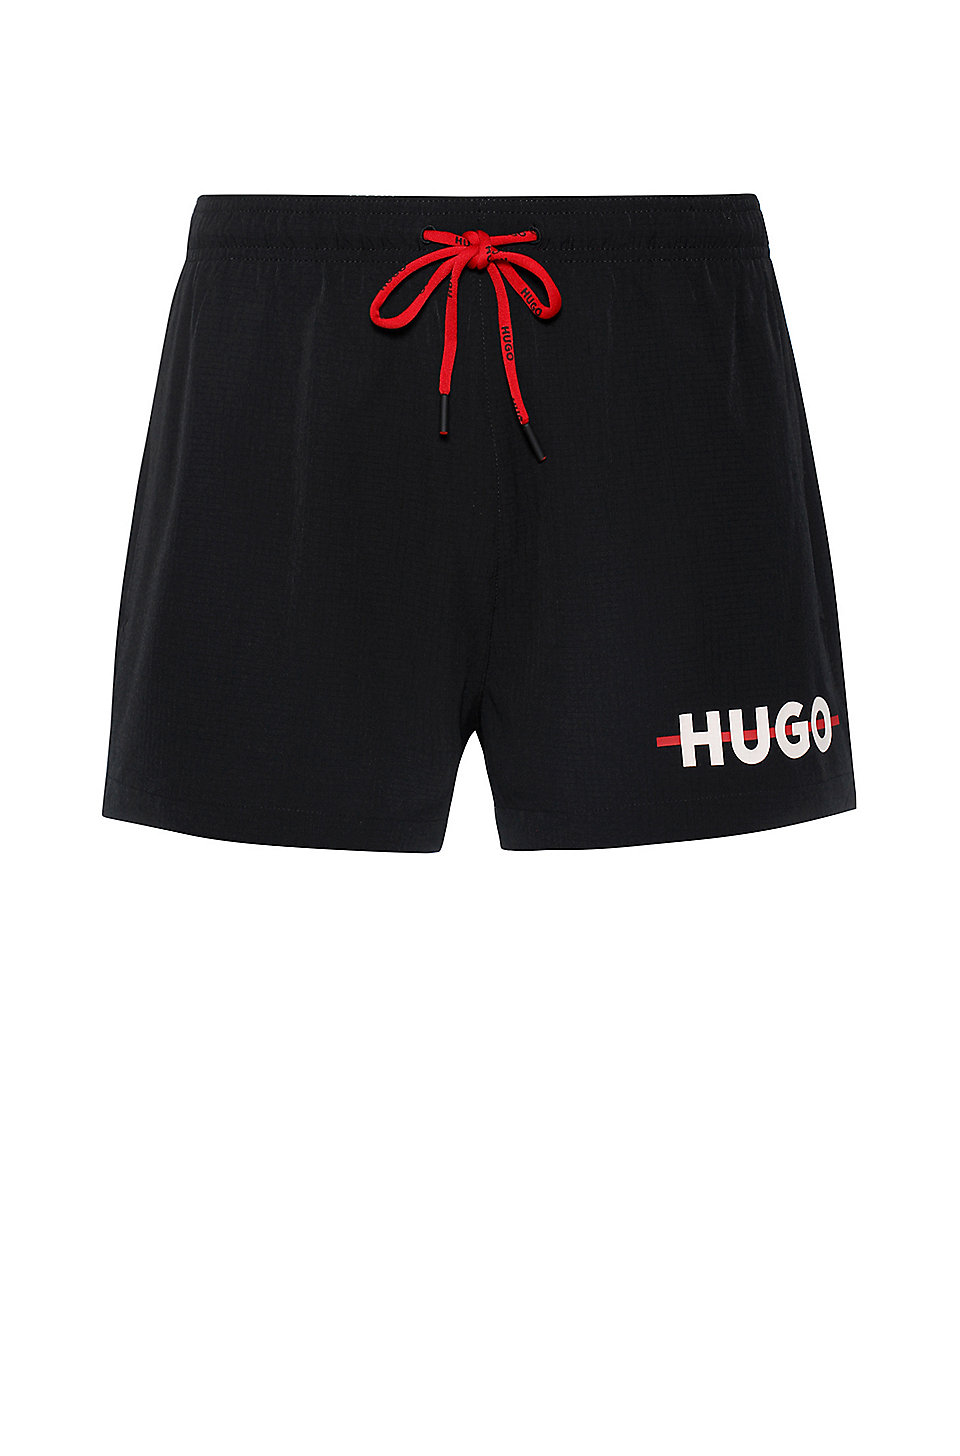 Hugo Boss Mens Long Length Quick Dry Swim Trunks 